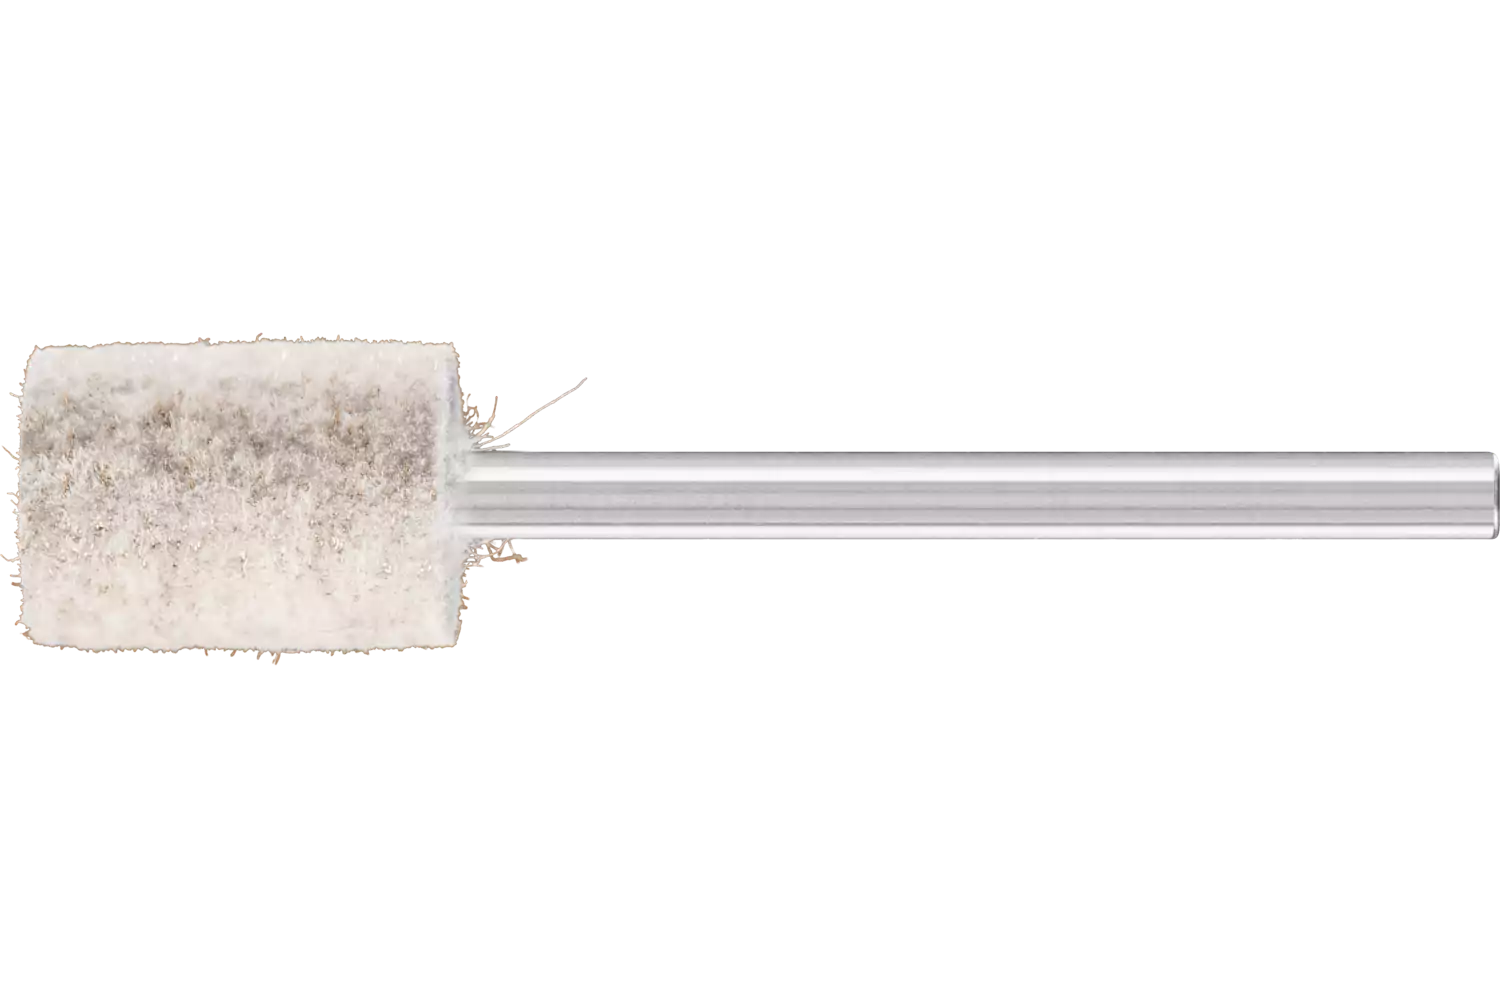 Feltri con gambo per lucidare duri forma cilindrica Ø 10x15 mm, gambo Ø 3 mm con inserto in metallo 1